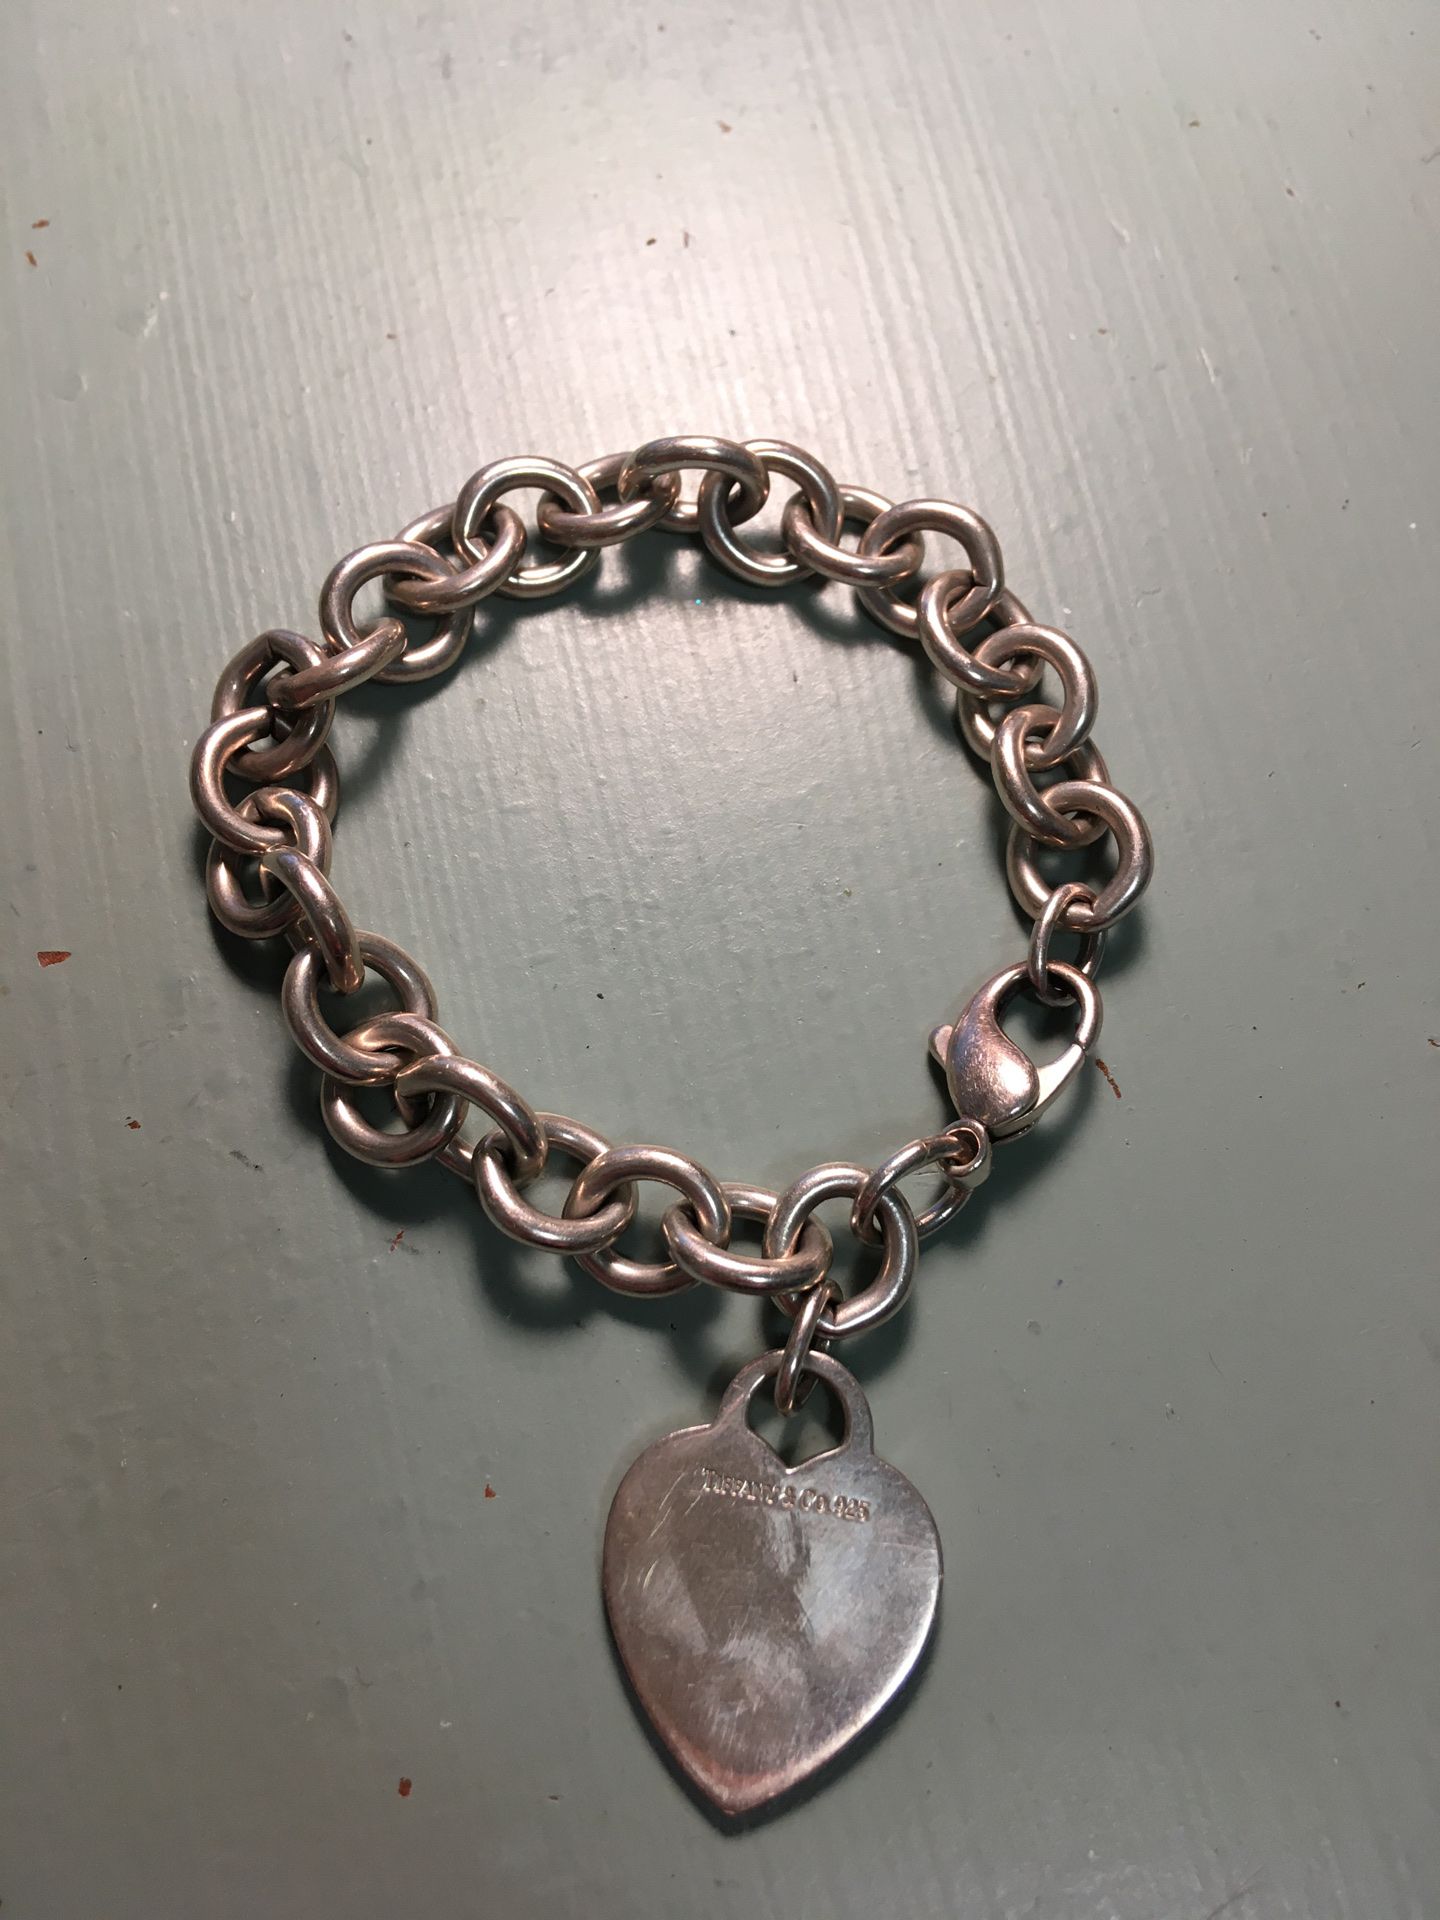 Tiffany & Co. Sterling Silver Heart Charm Bracelet